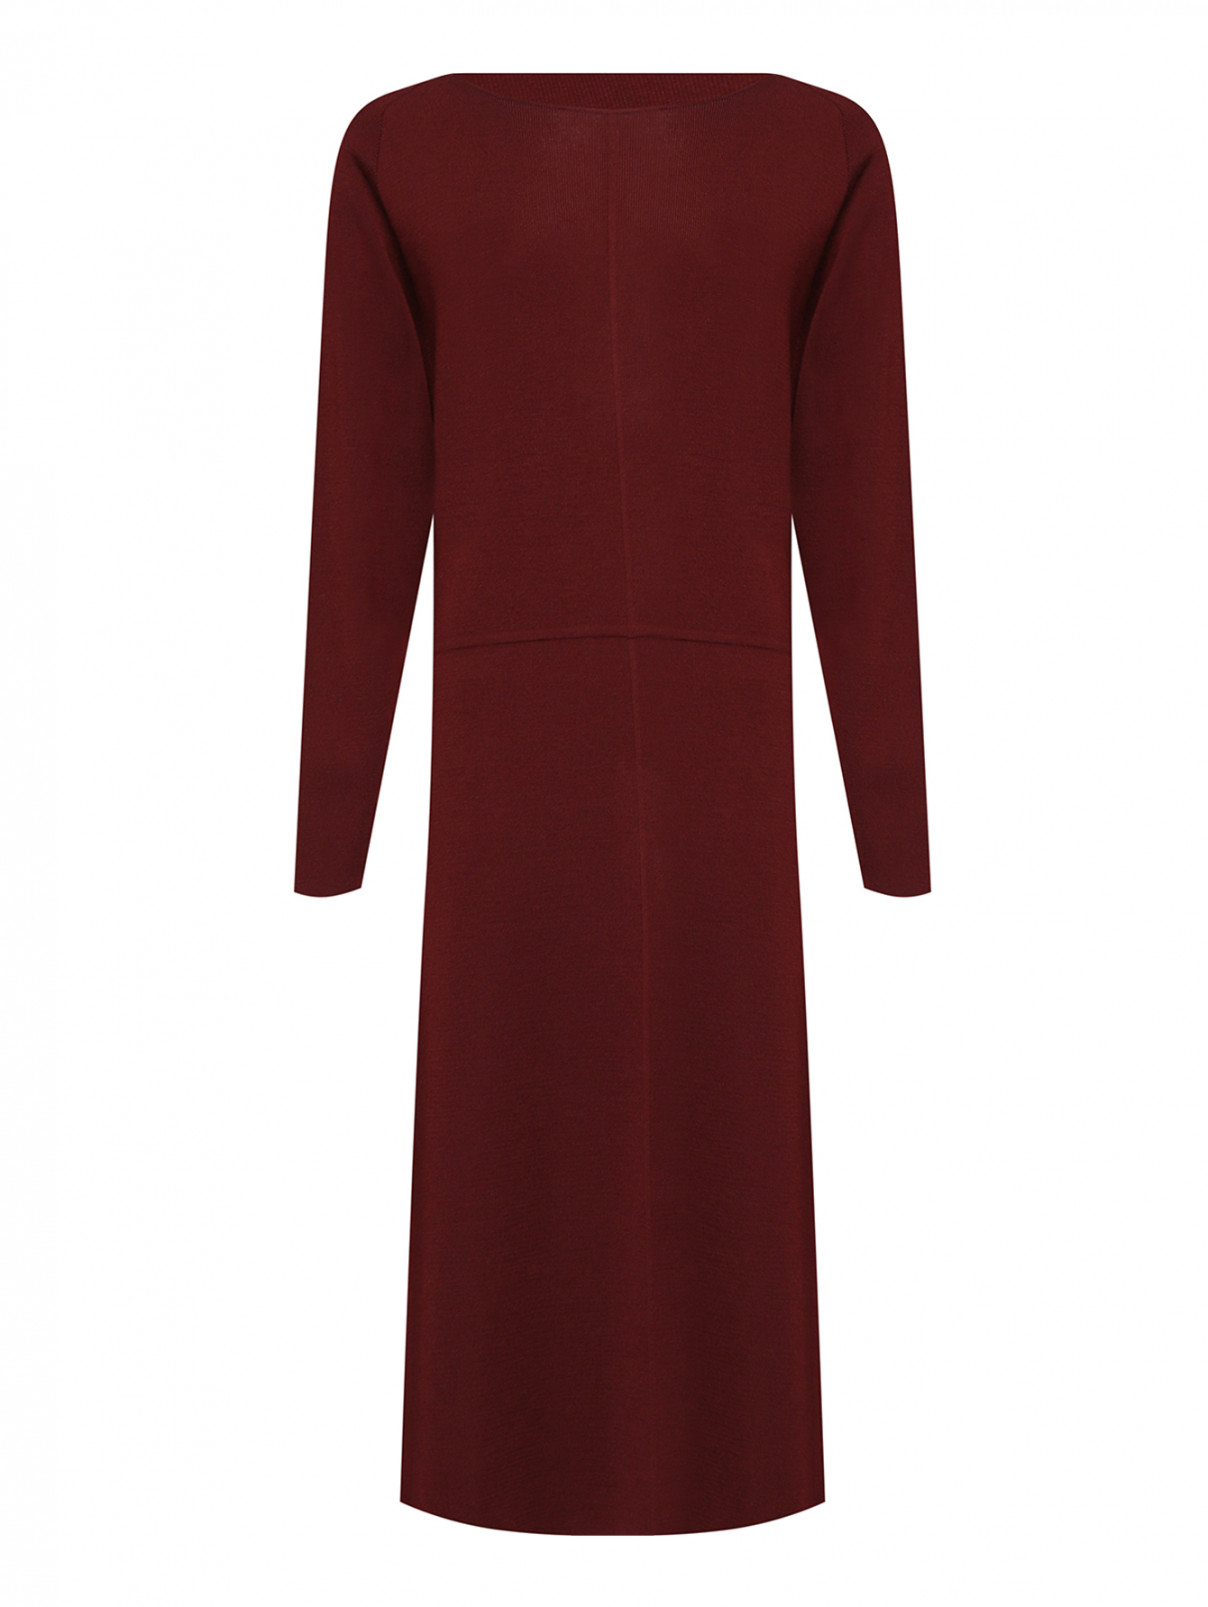 Трикотажное платье из шерсти Luisa Spagnoli  –  Общий вид  – Цвет:  Красный